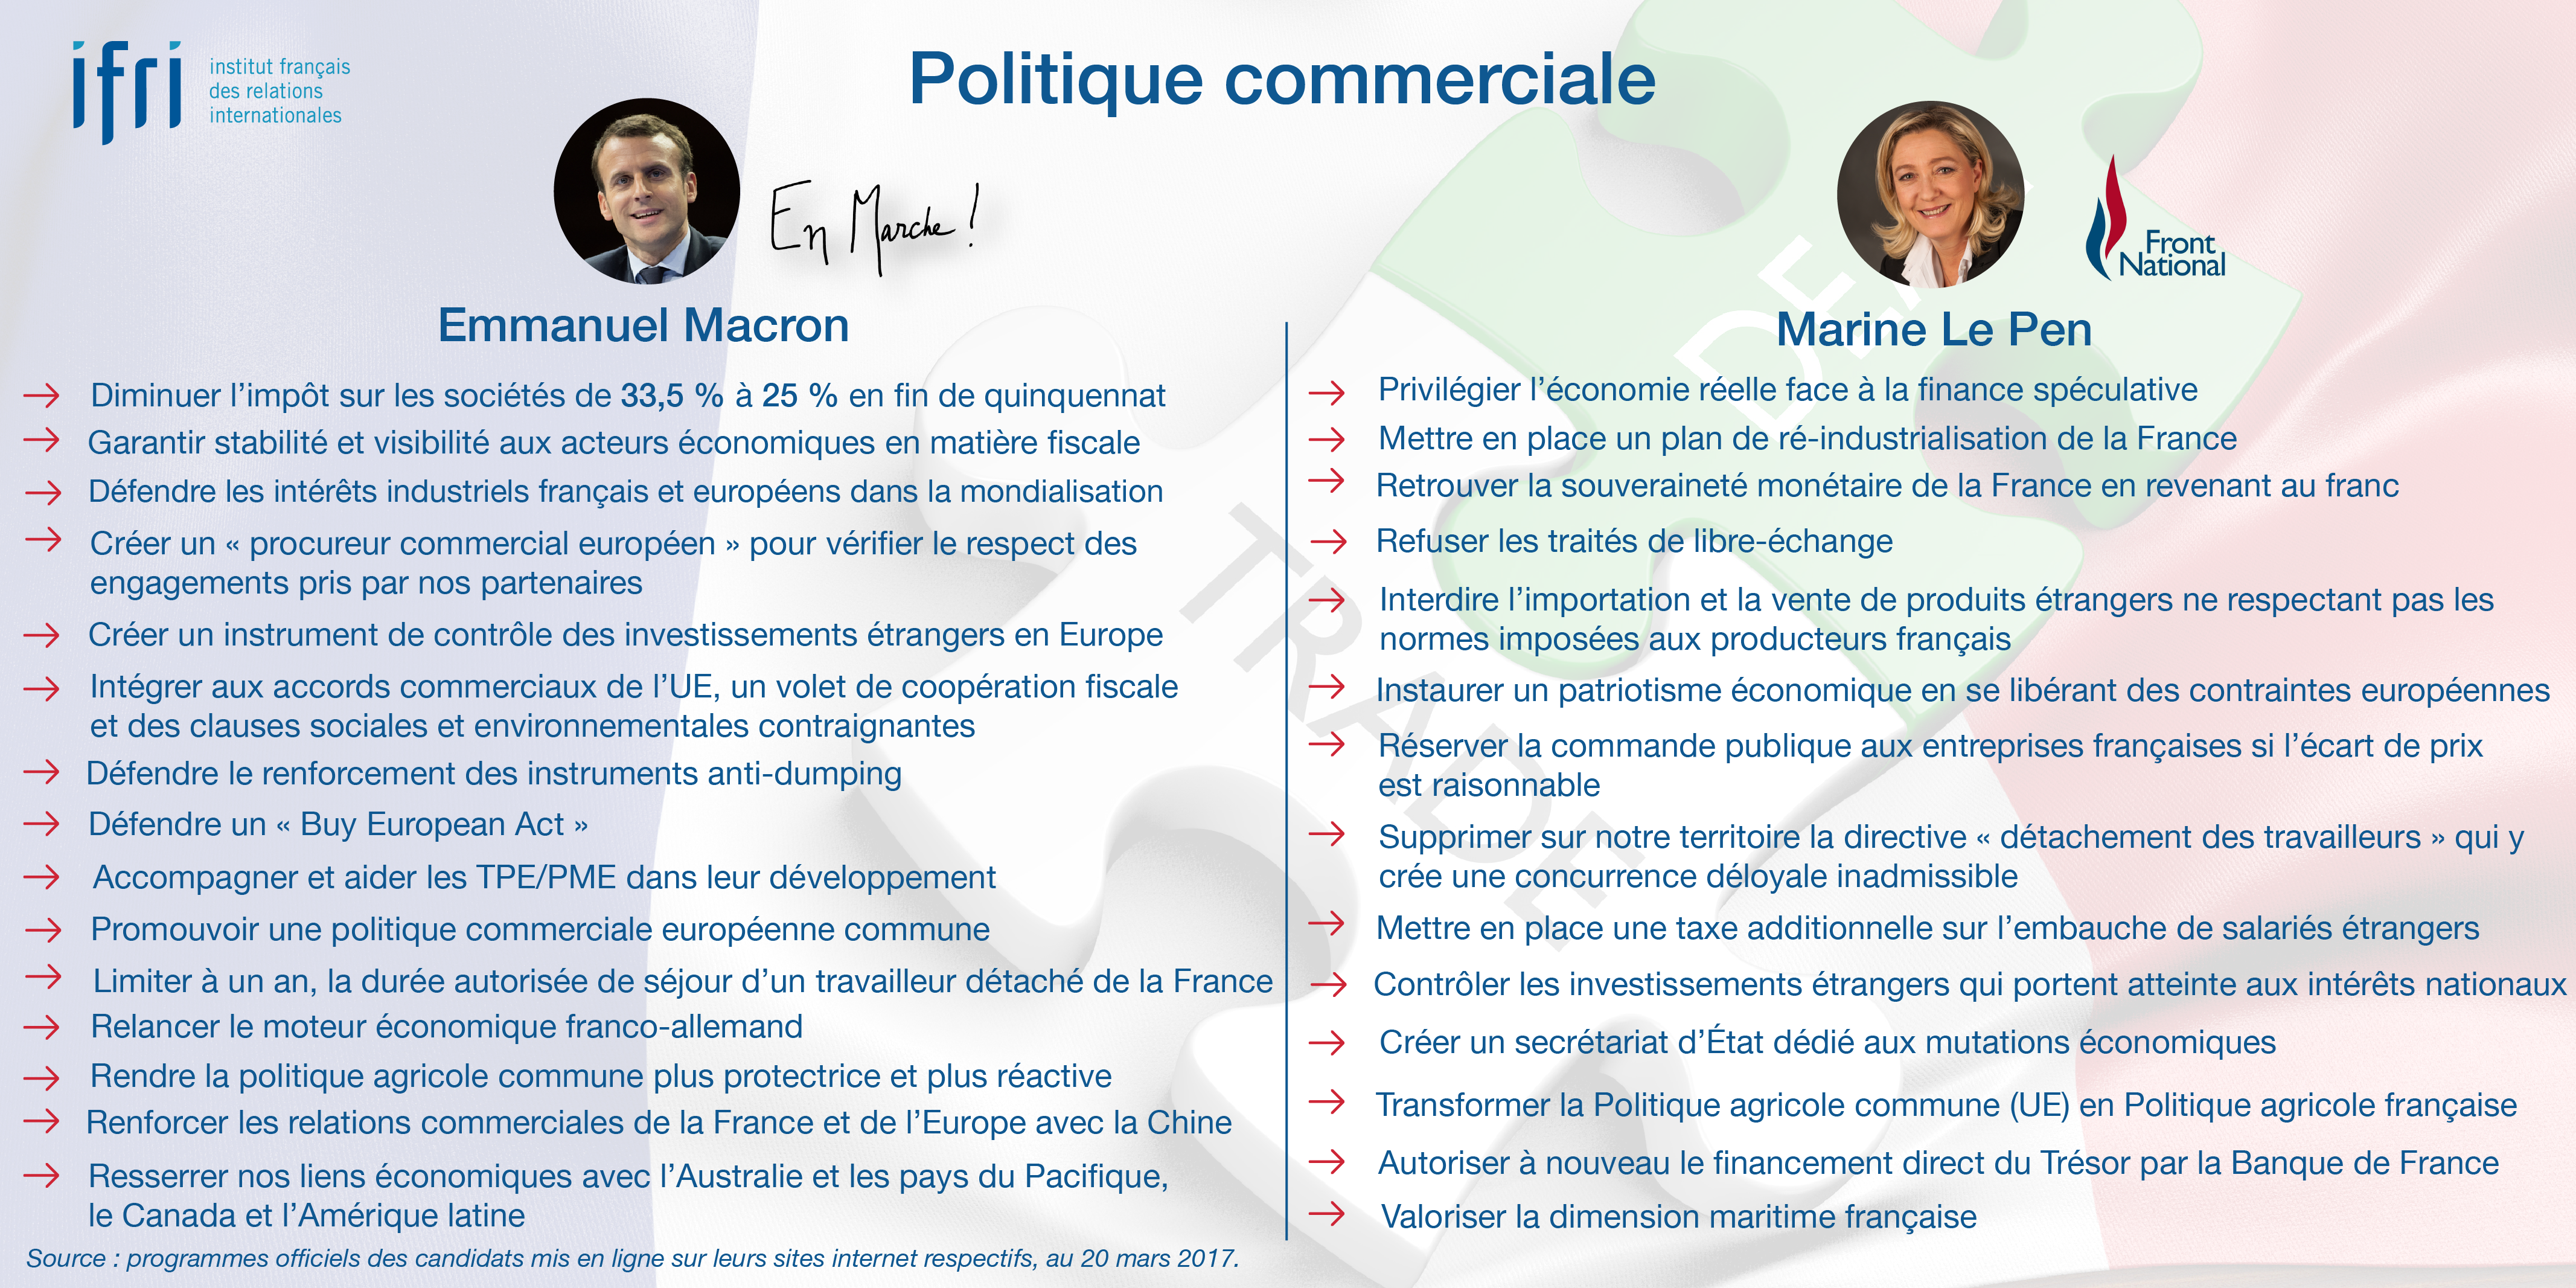 Politique commerciale - Macron - Le Pen - Présidentielle 2017